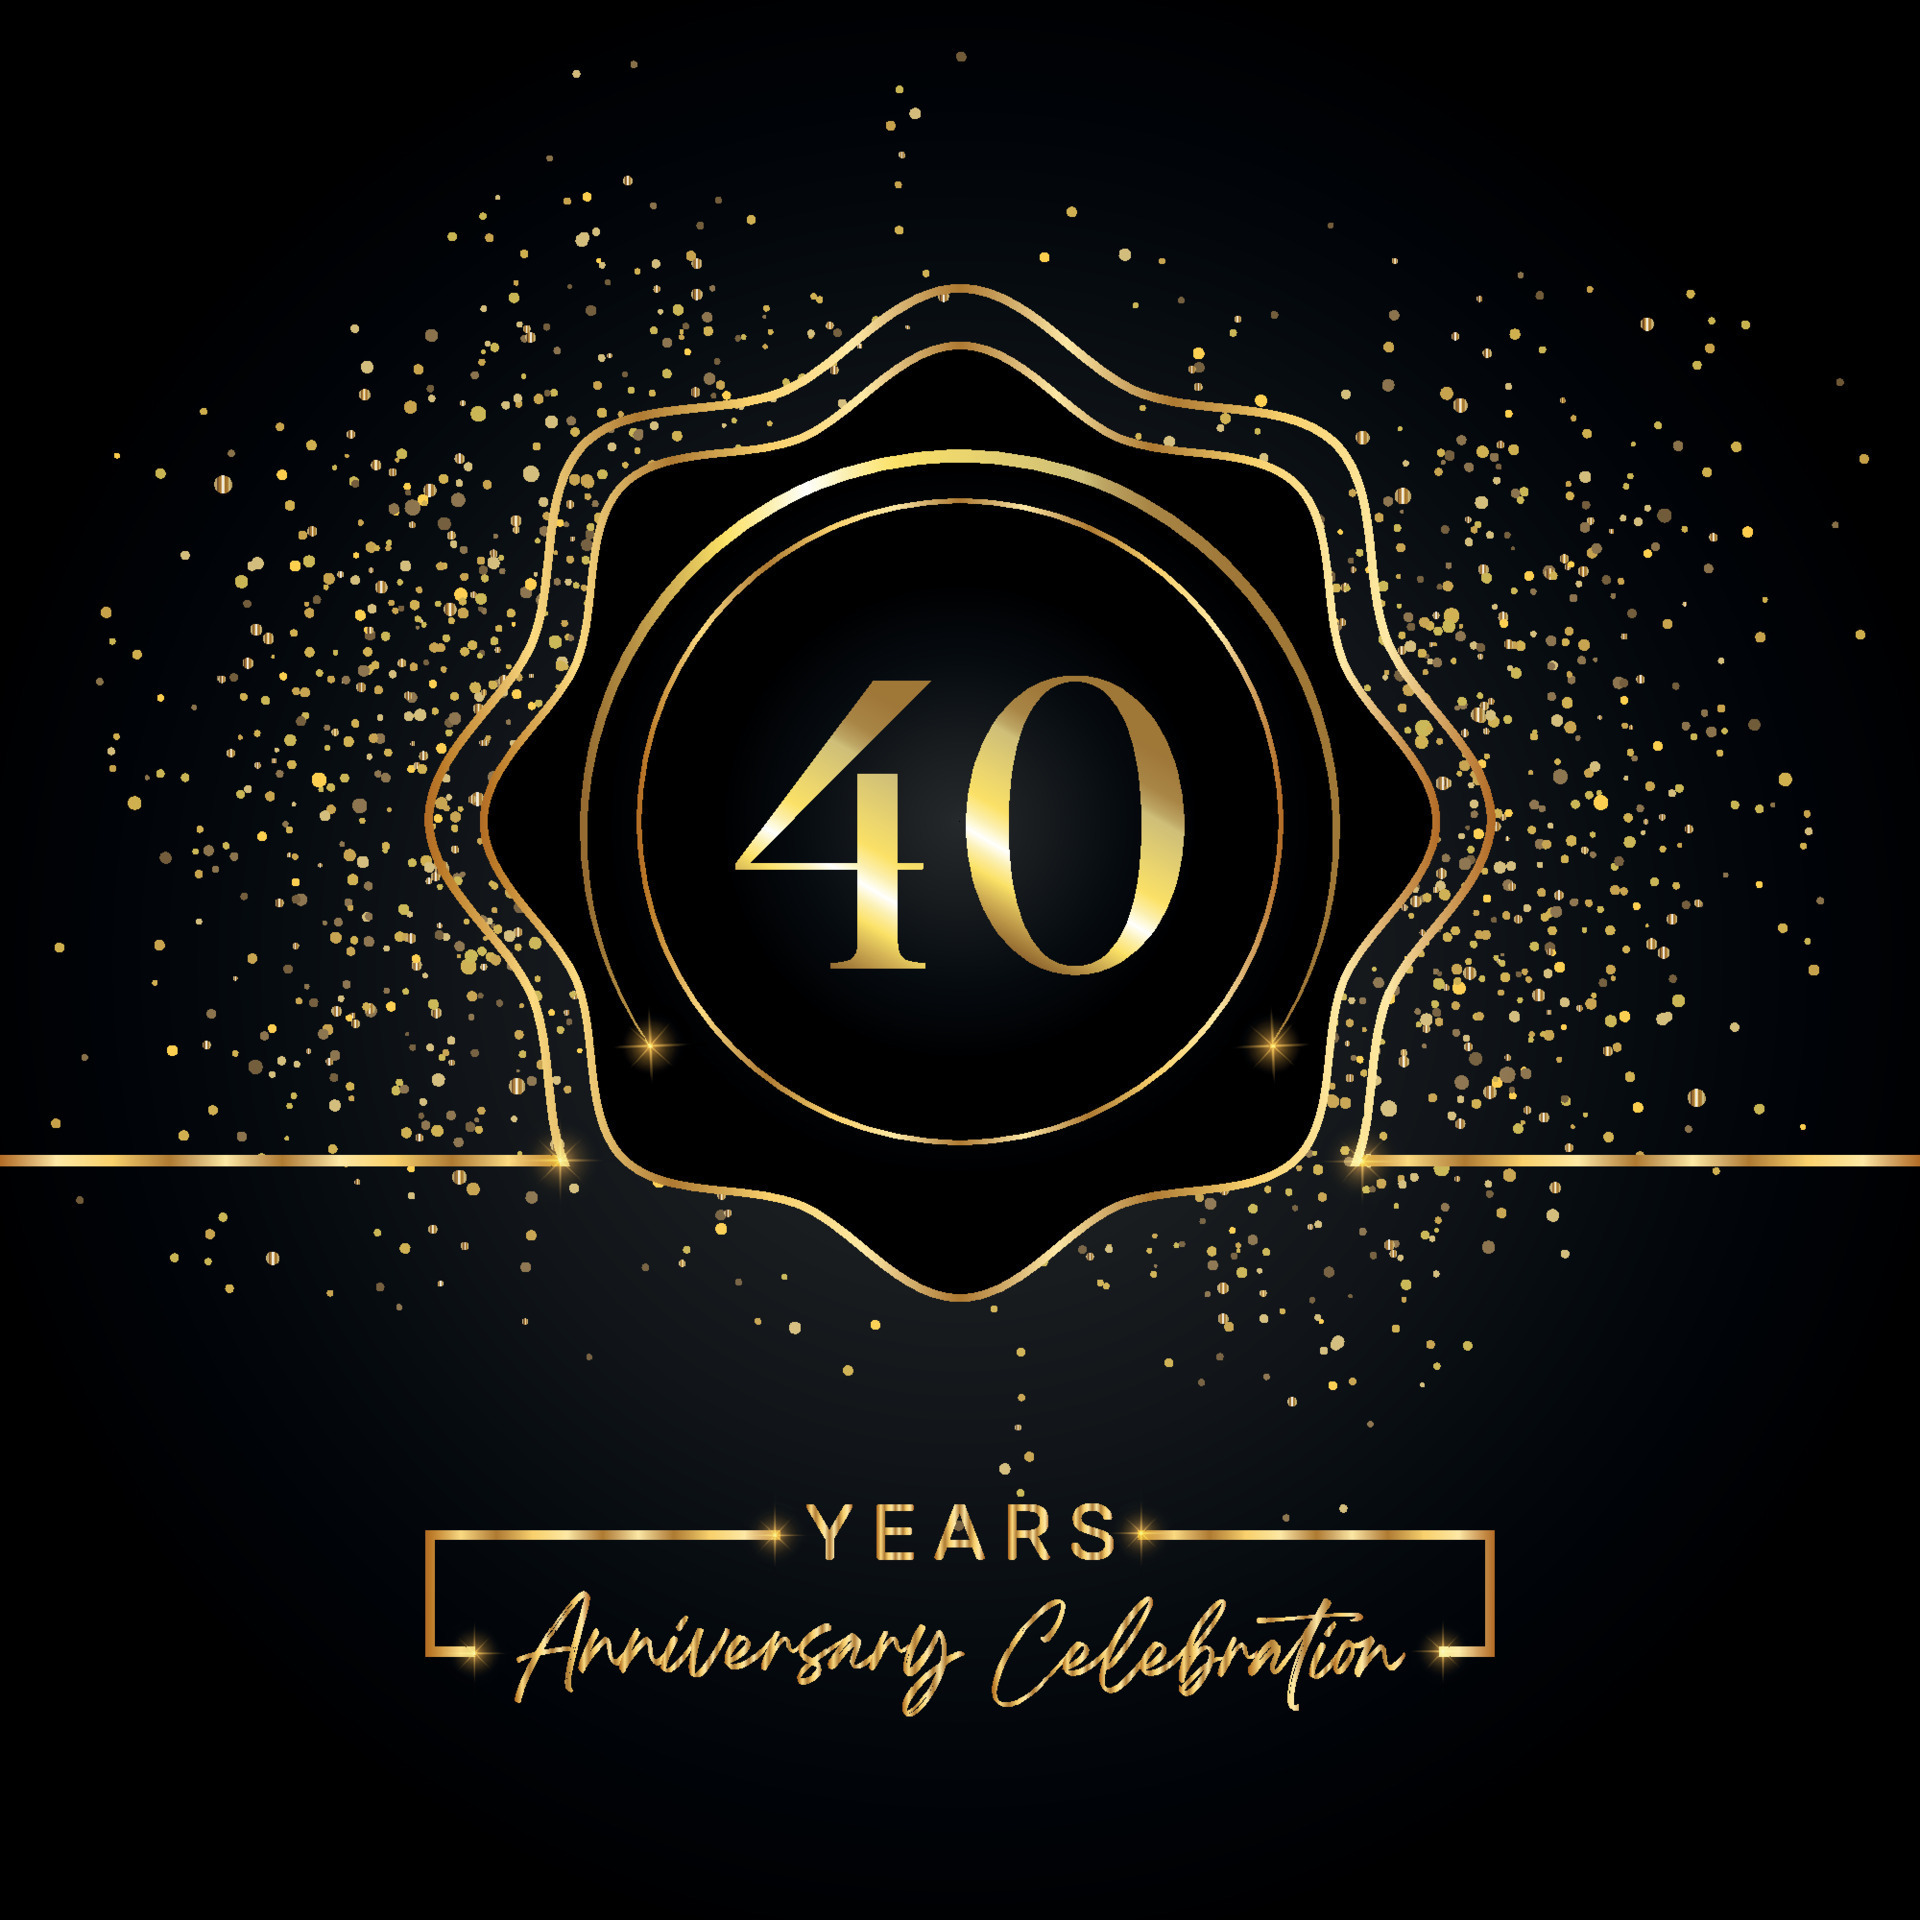 Plantilla de Invitación de Aniversario de Cumpleaños de 40 años